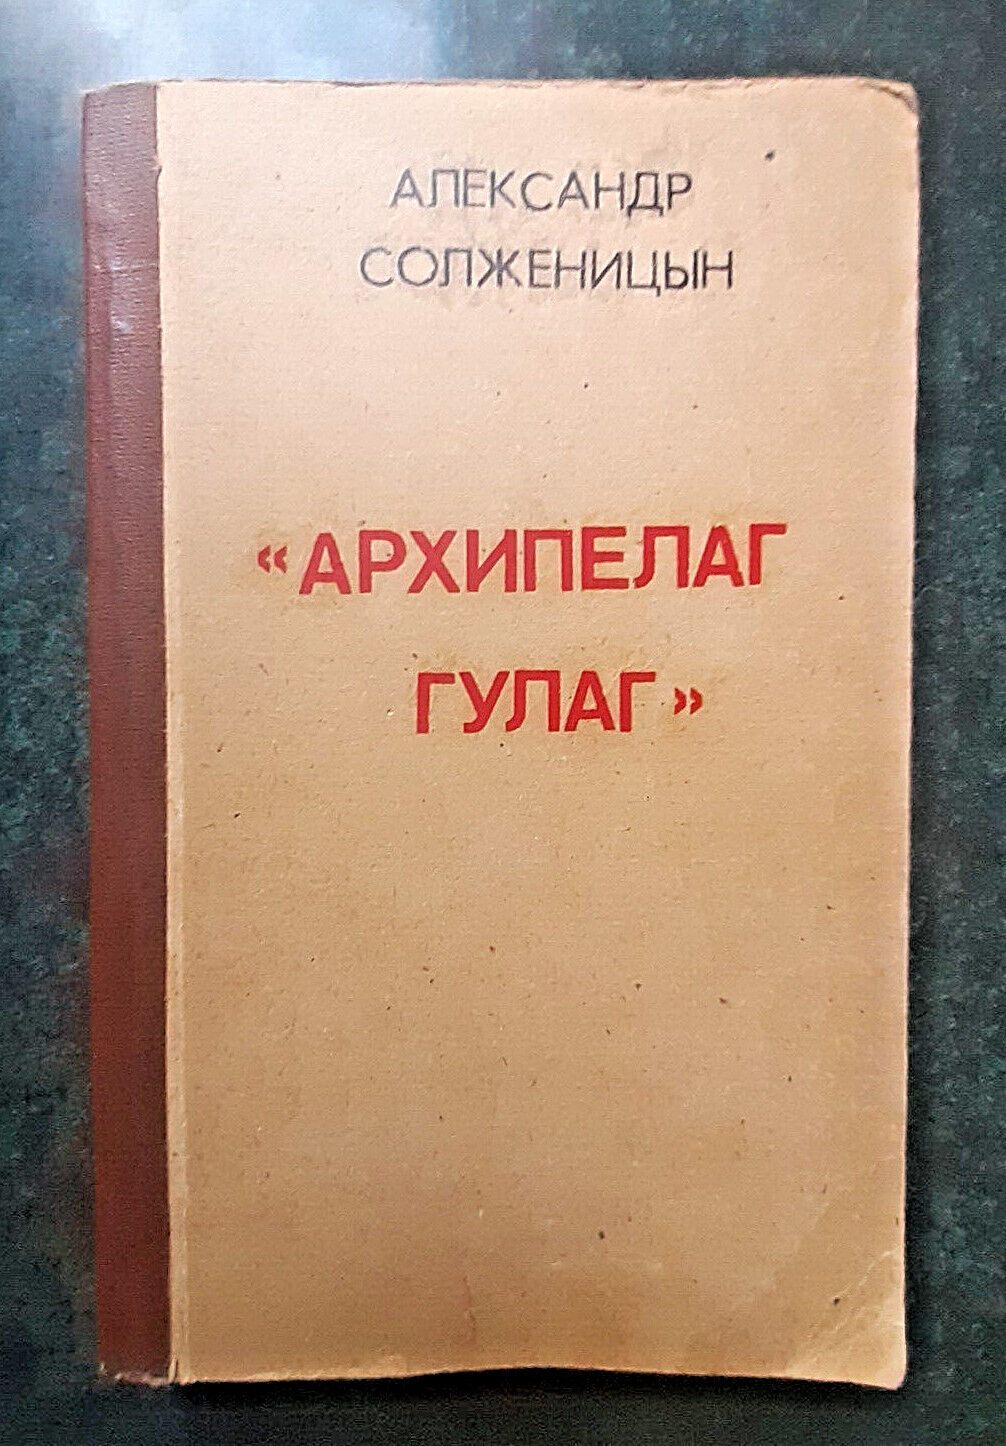 1989 1st Soviet Russian edition Gulag Archipelag Solzhenitsyn magazine Novyy mir